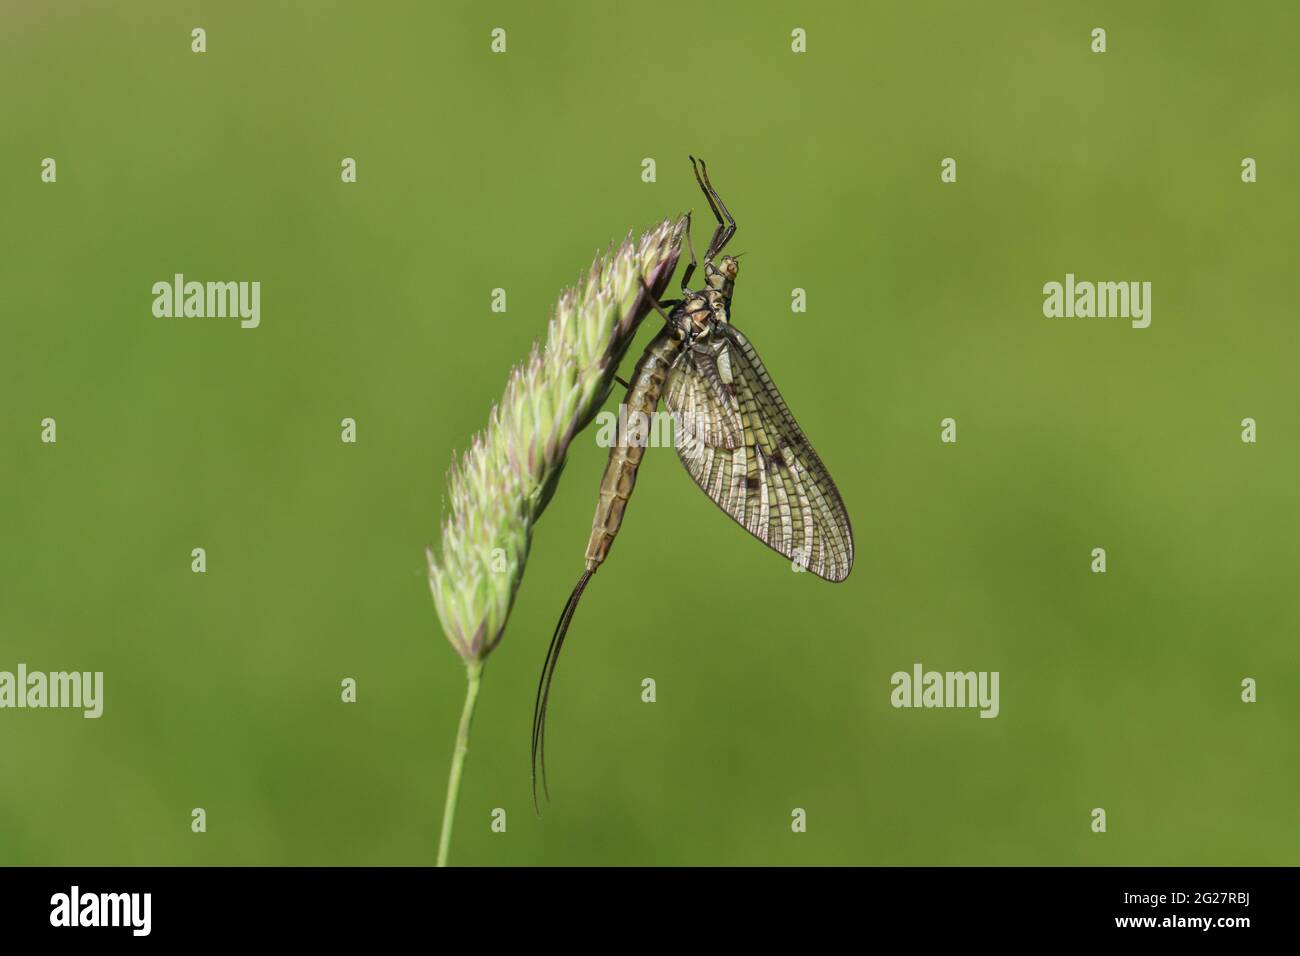 A beautiful Mayfly, Ephemera vulgata, perching on grass seeds. Stock Photo